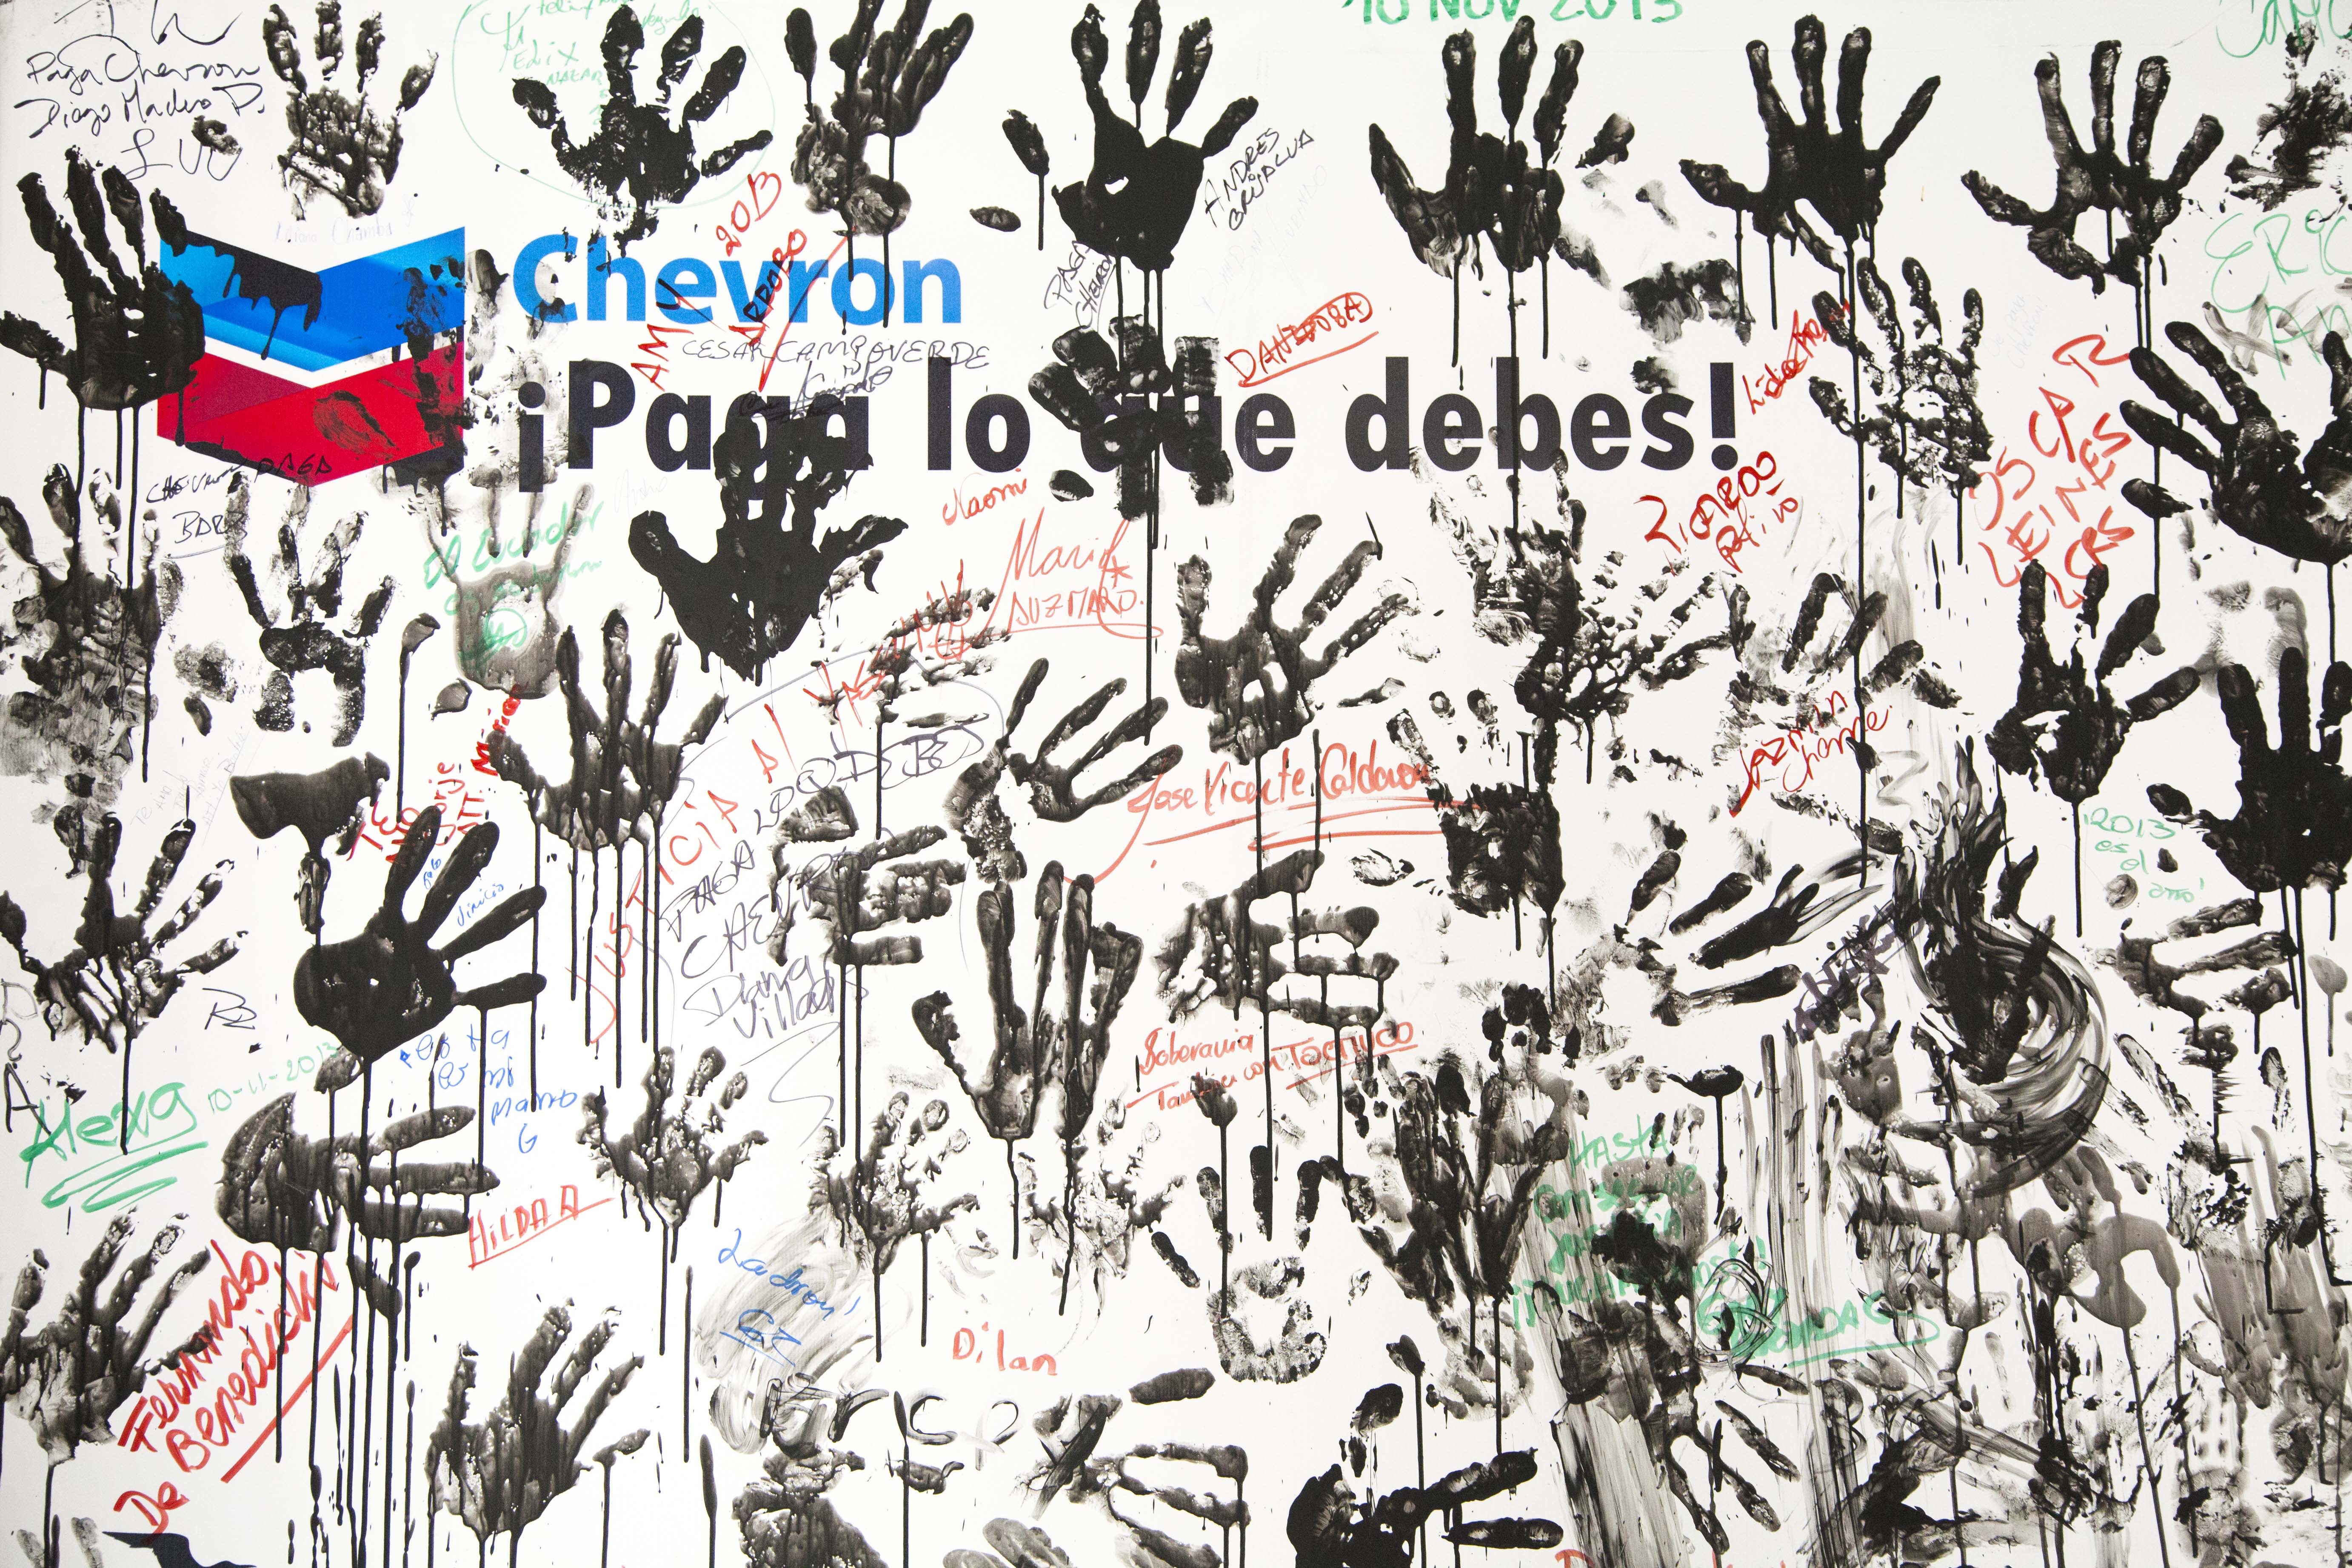 Caso Chevron - Texaco, conversatorio con prensa extranjera